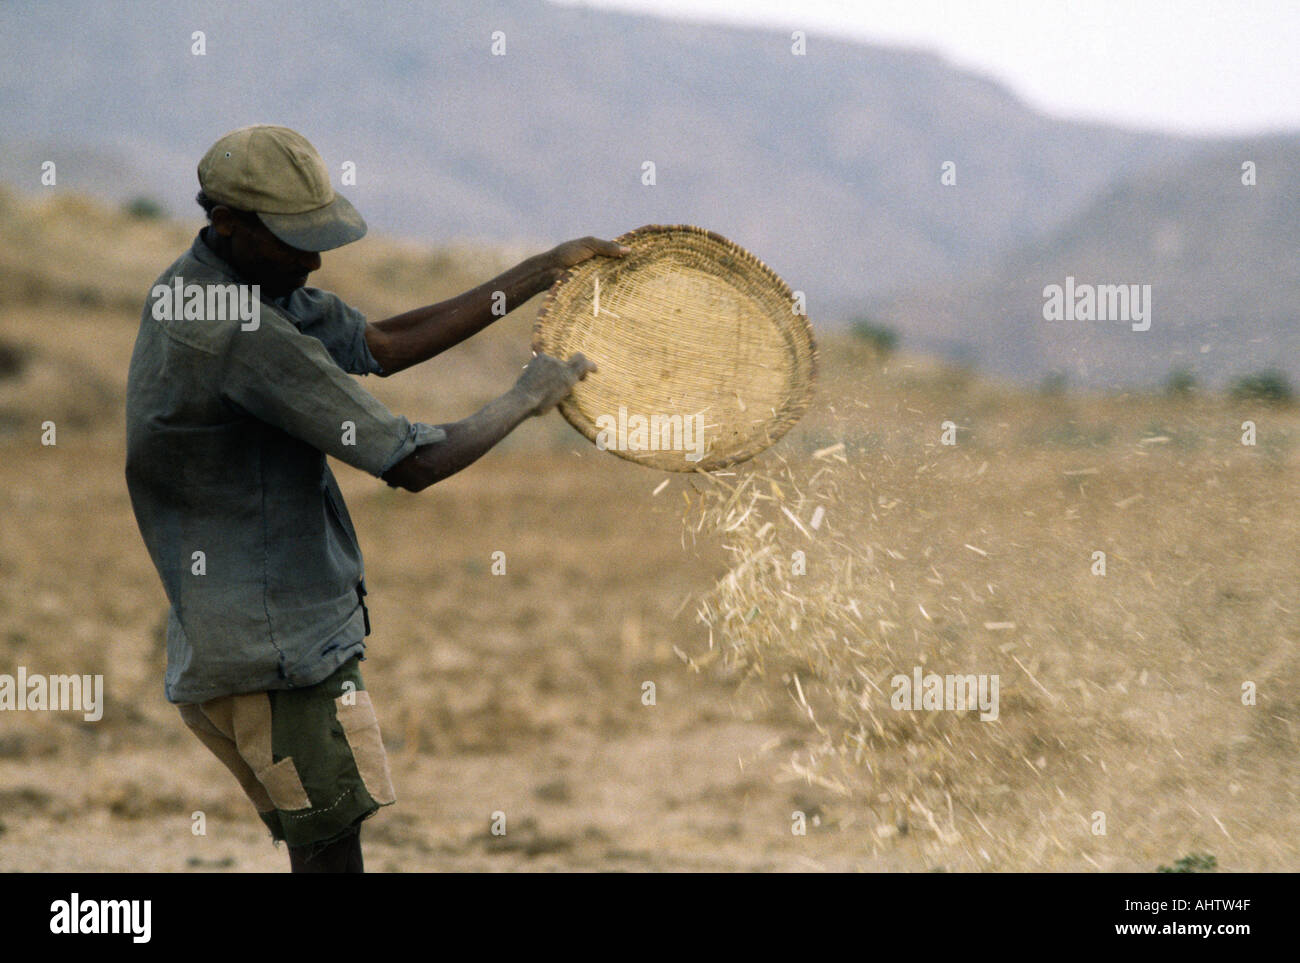 Fermier Winnwing millet de doigt à la main en utilisant un tissage Winnwing plateau Tigray, Ethiopie Banque D'Images